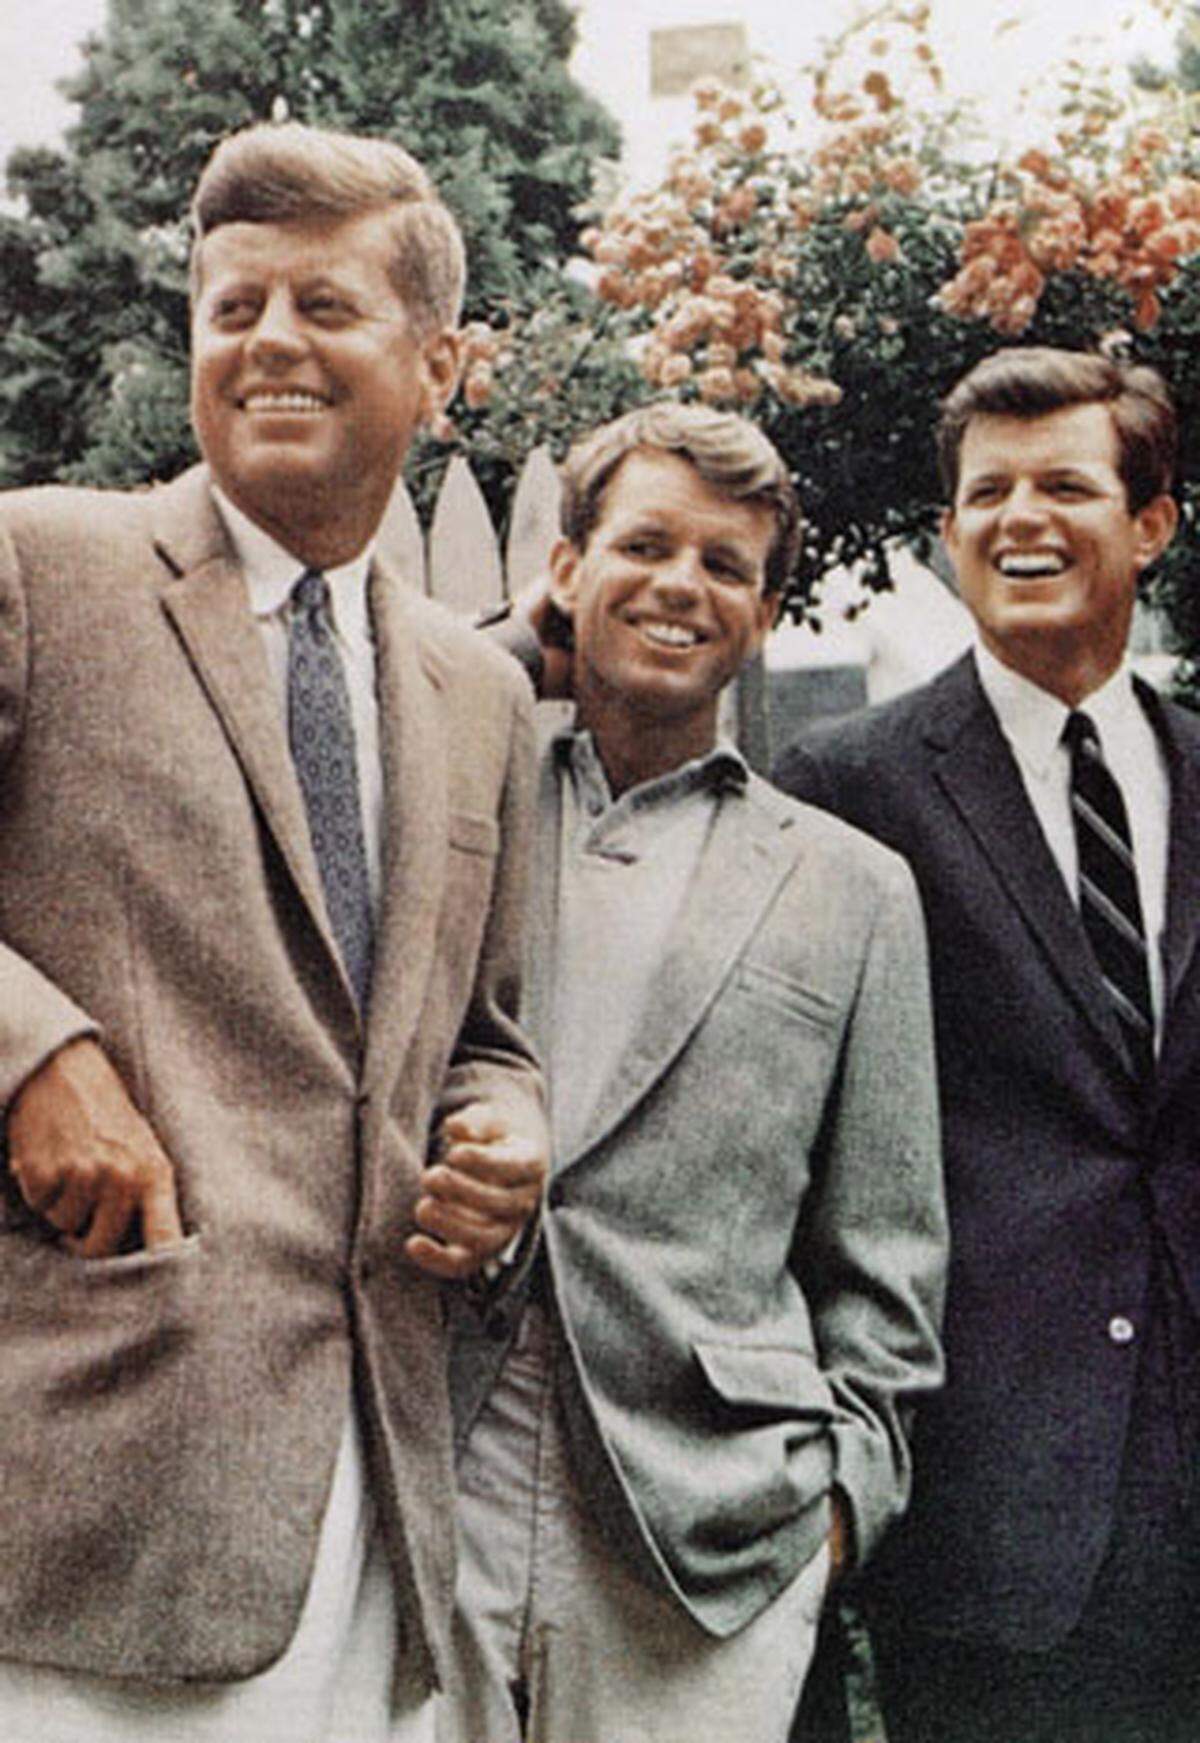 Übrig bleiben fünf Töchter - darunter Rosemary, die nach einer missglückten Gehirnoperation, die ihr Vater 1941 veranlasst, schwer behindert ist - und die drei berühmten Kennedy-Brüder (von links nach rechts): John Fitzgerald, Robert und Edward "Ted" Kennedy.